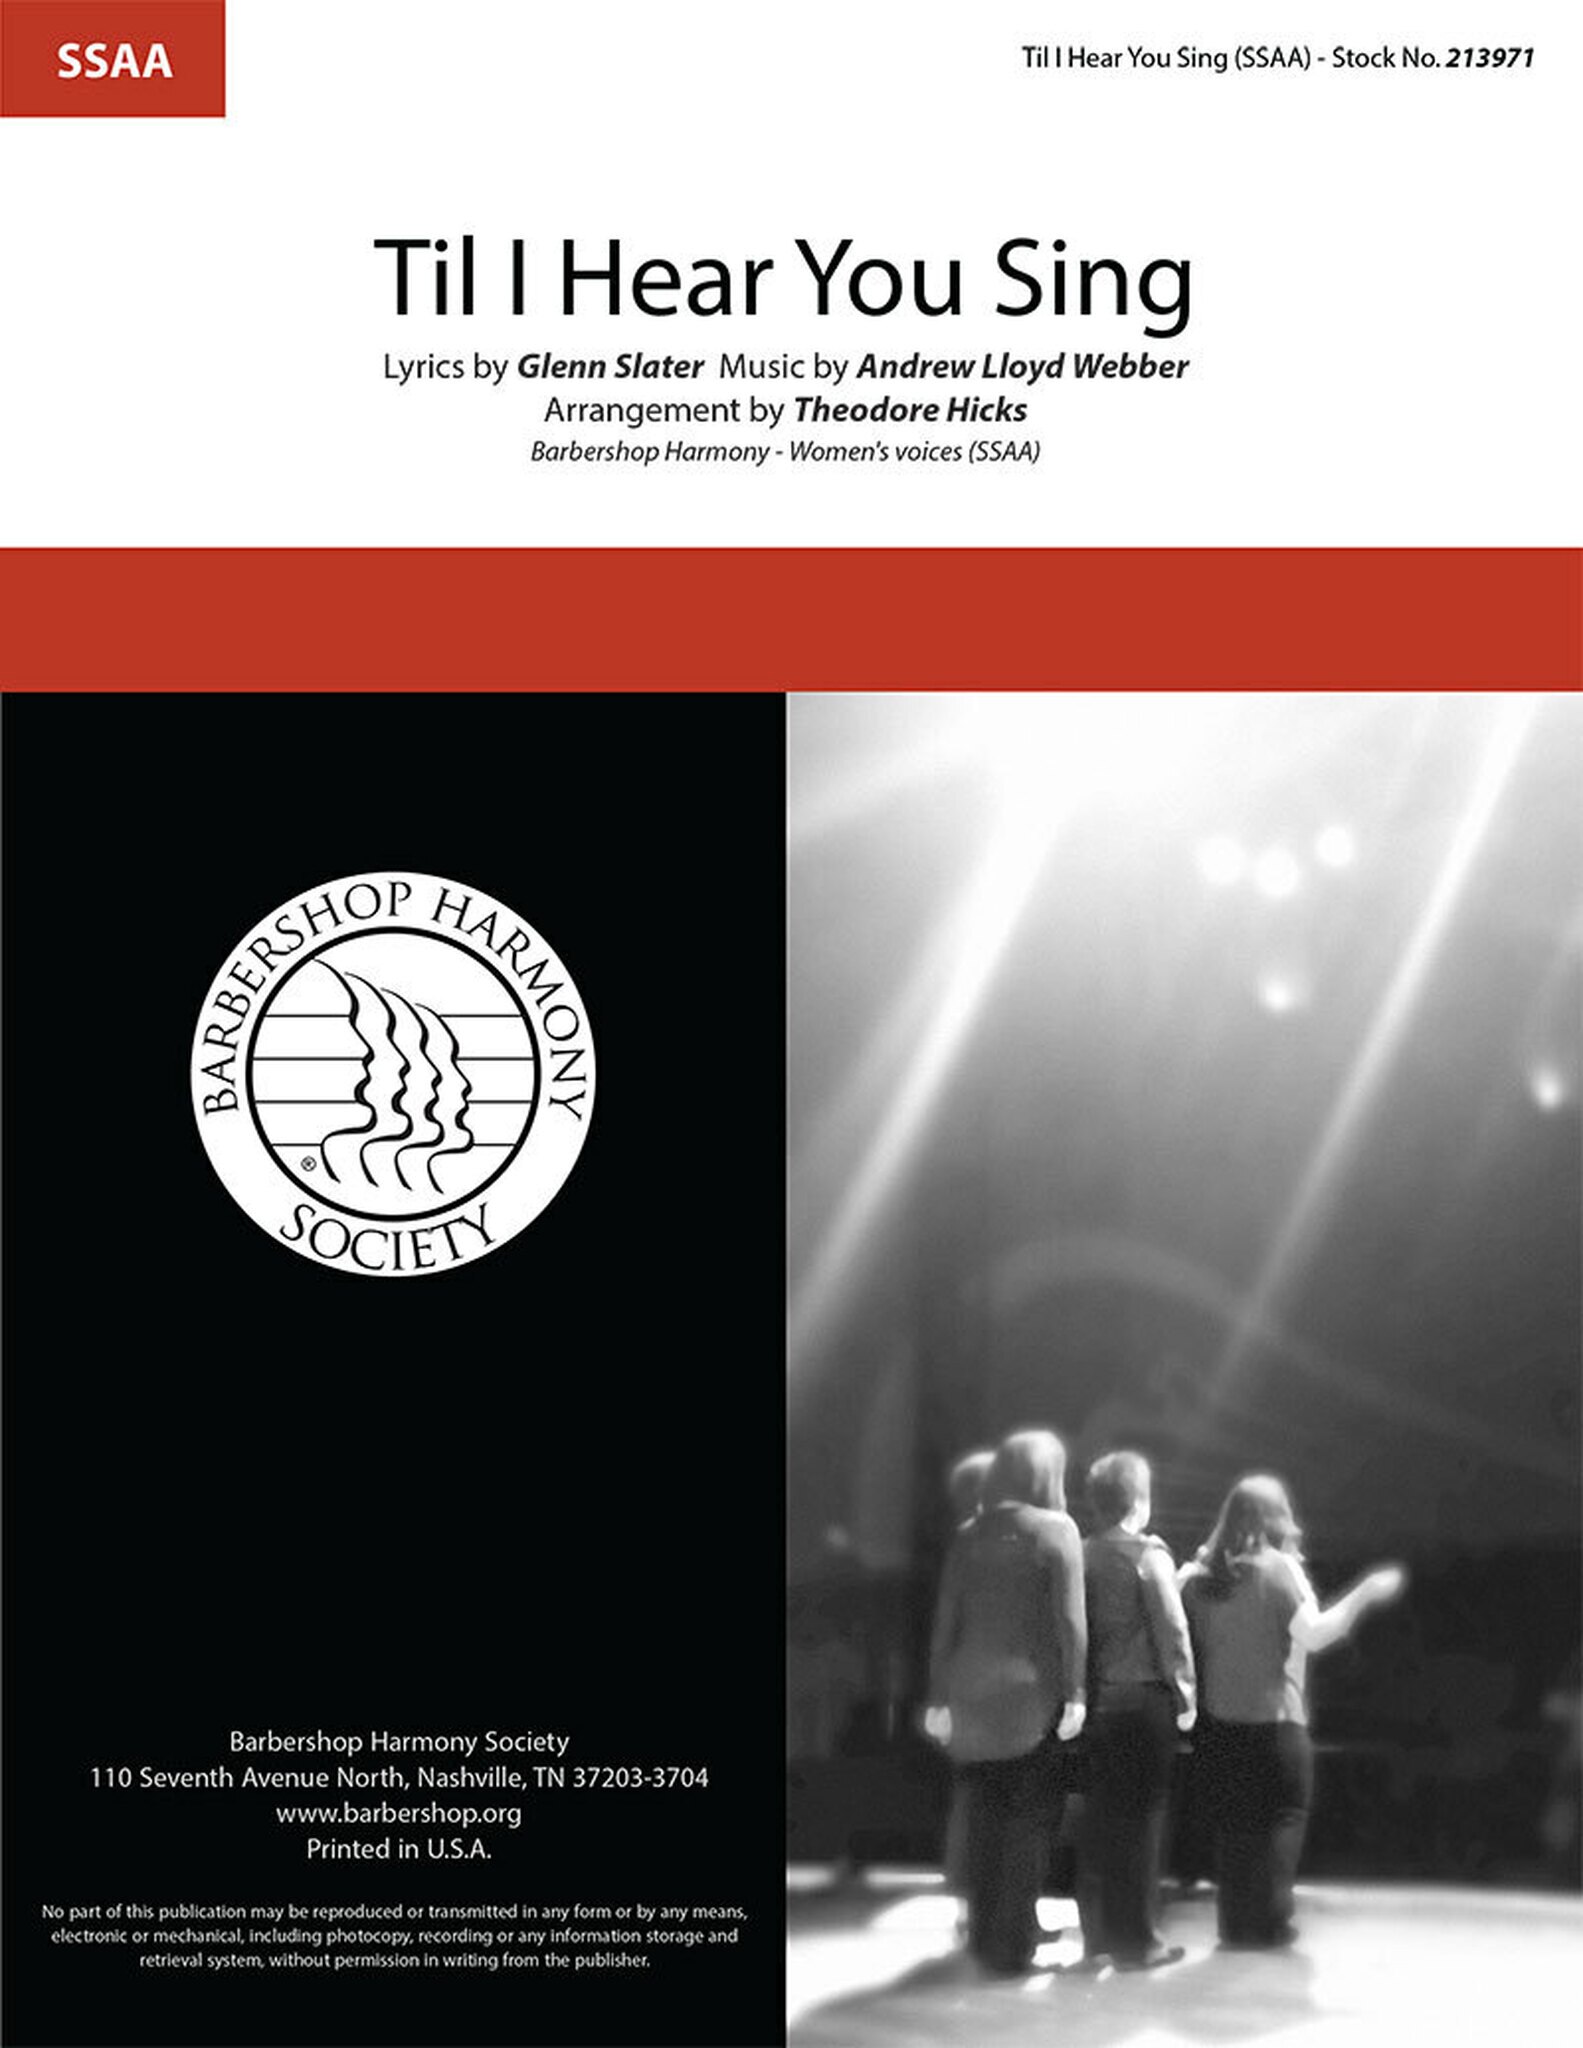 'Til I Hear You Sing : SSAA : Theo Hicks : Andrew Lloyd Webber : Love Never Dies : Sheet Music : 00363317